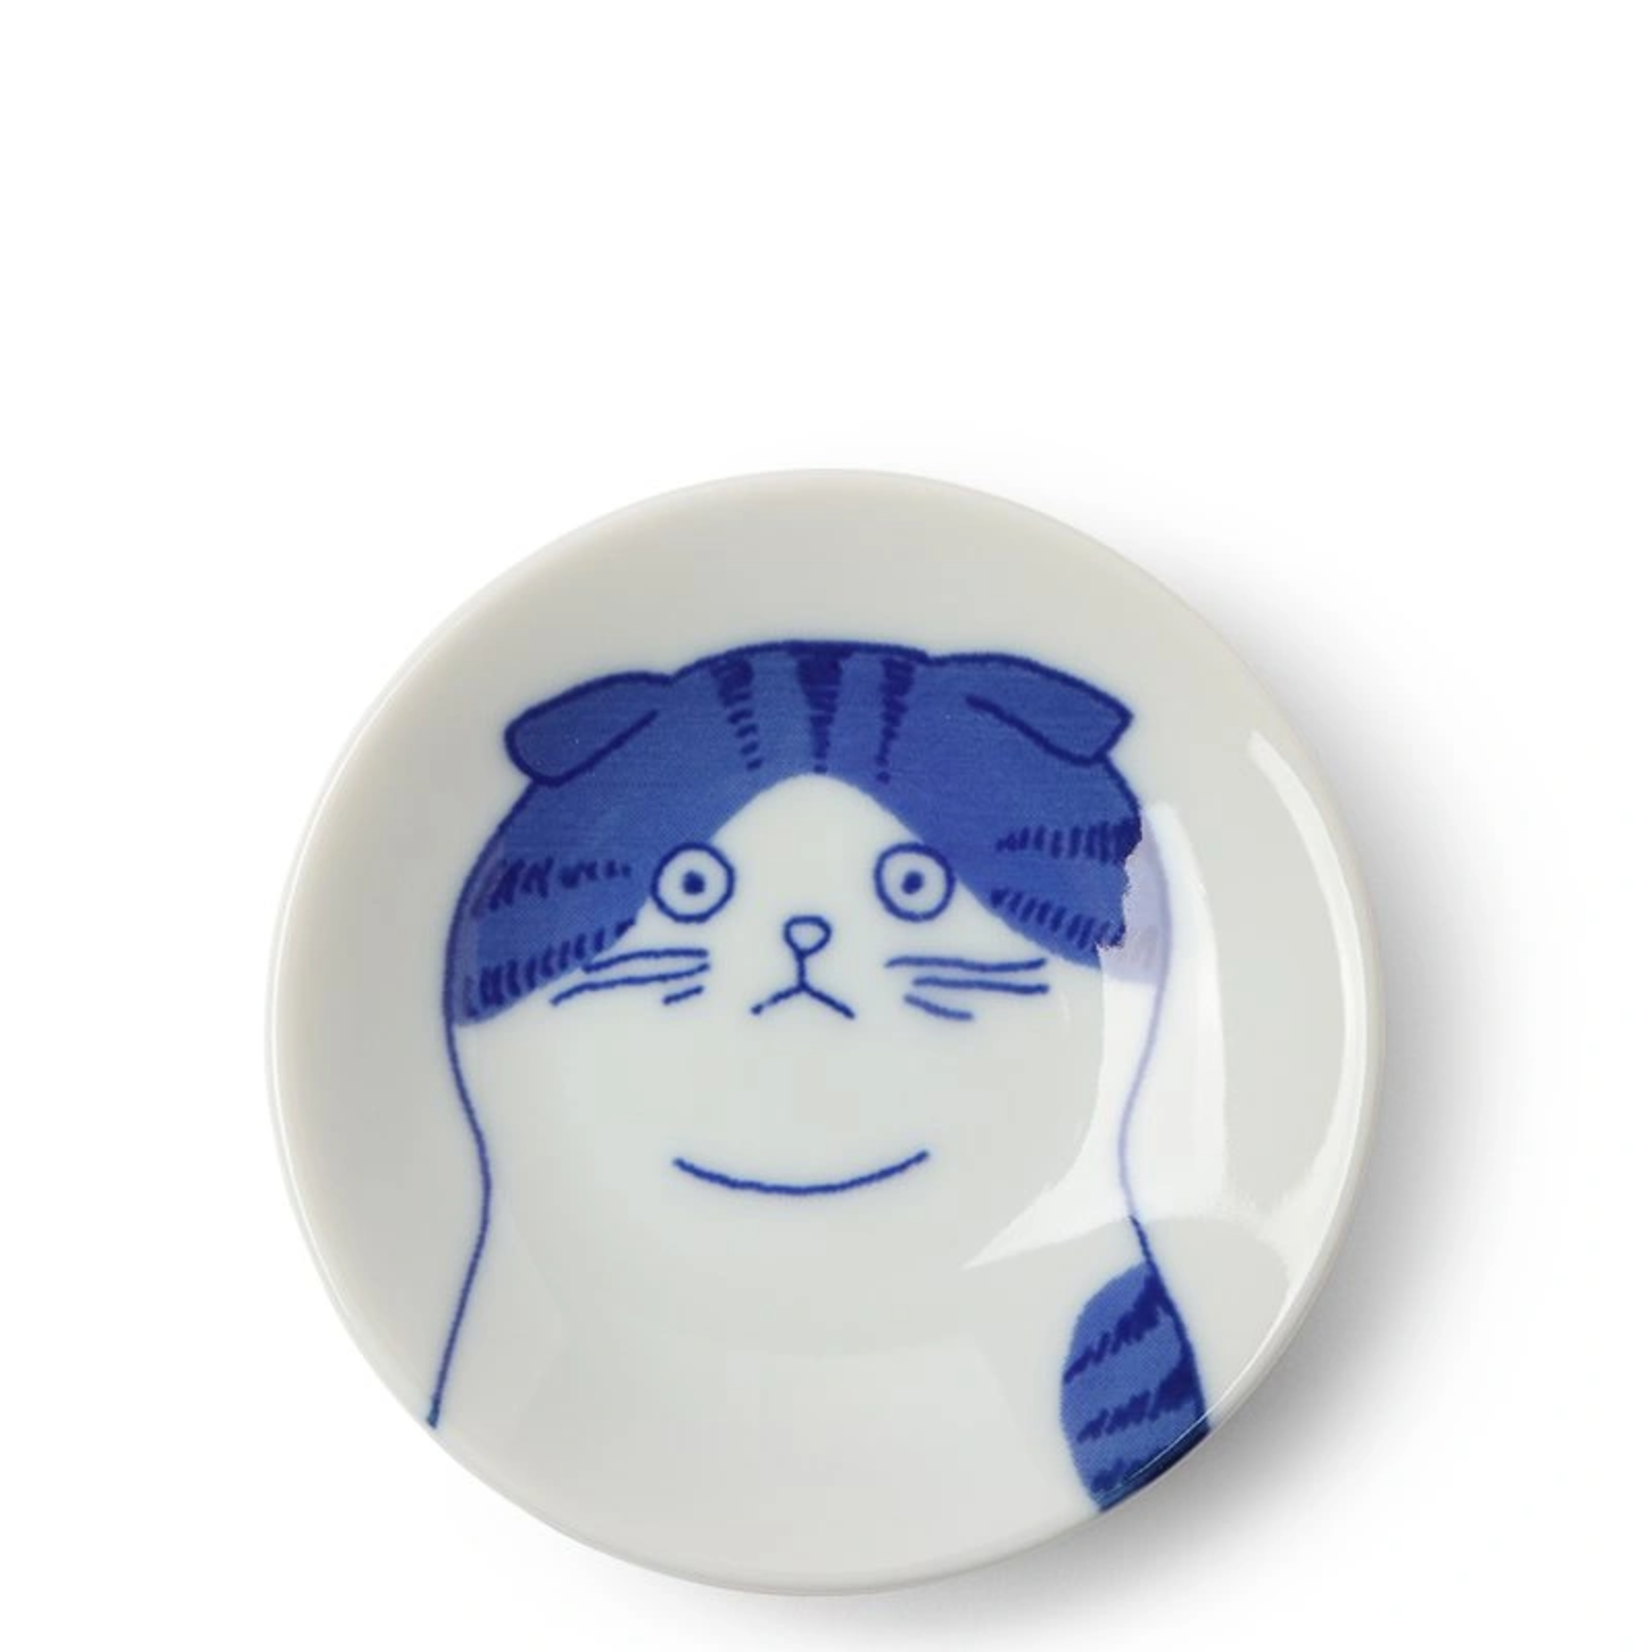 Shichita Plate - 3" Cat Face Blue/White Scott - 160-065